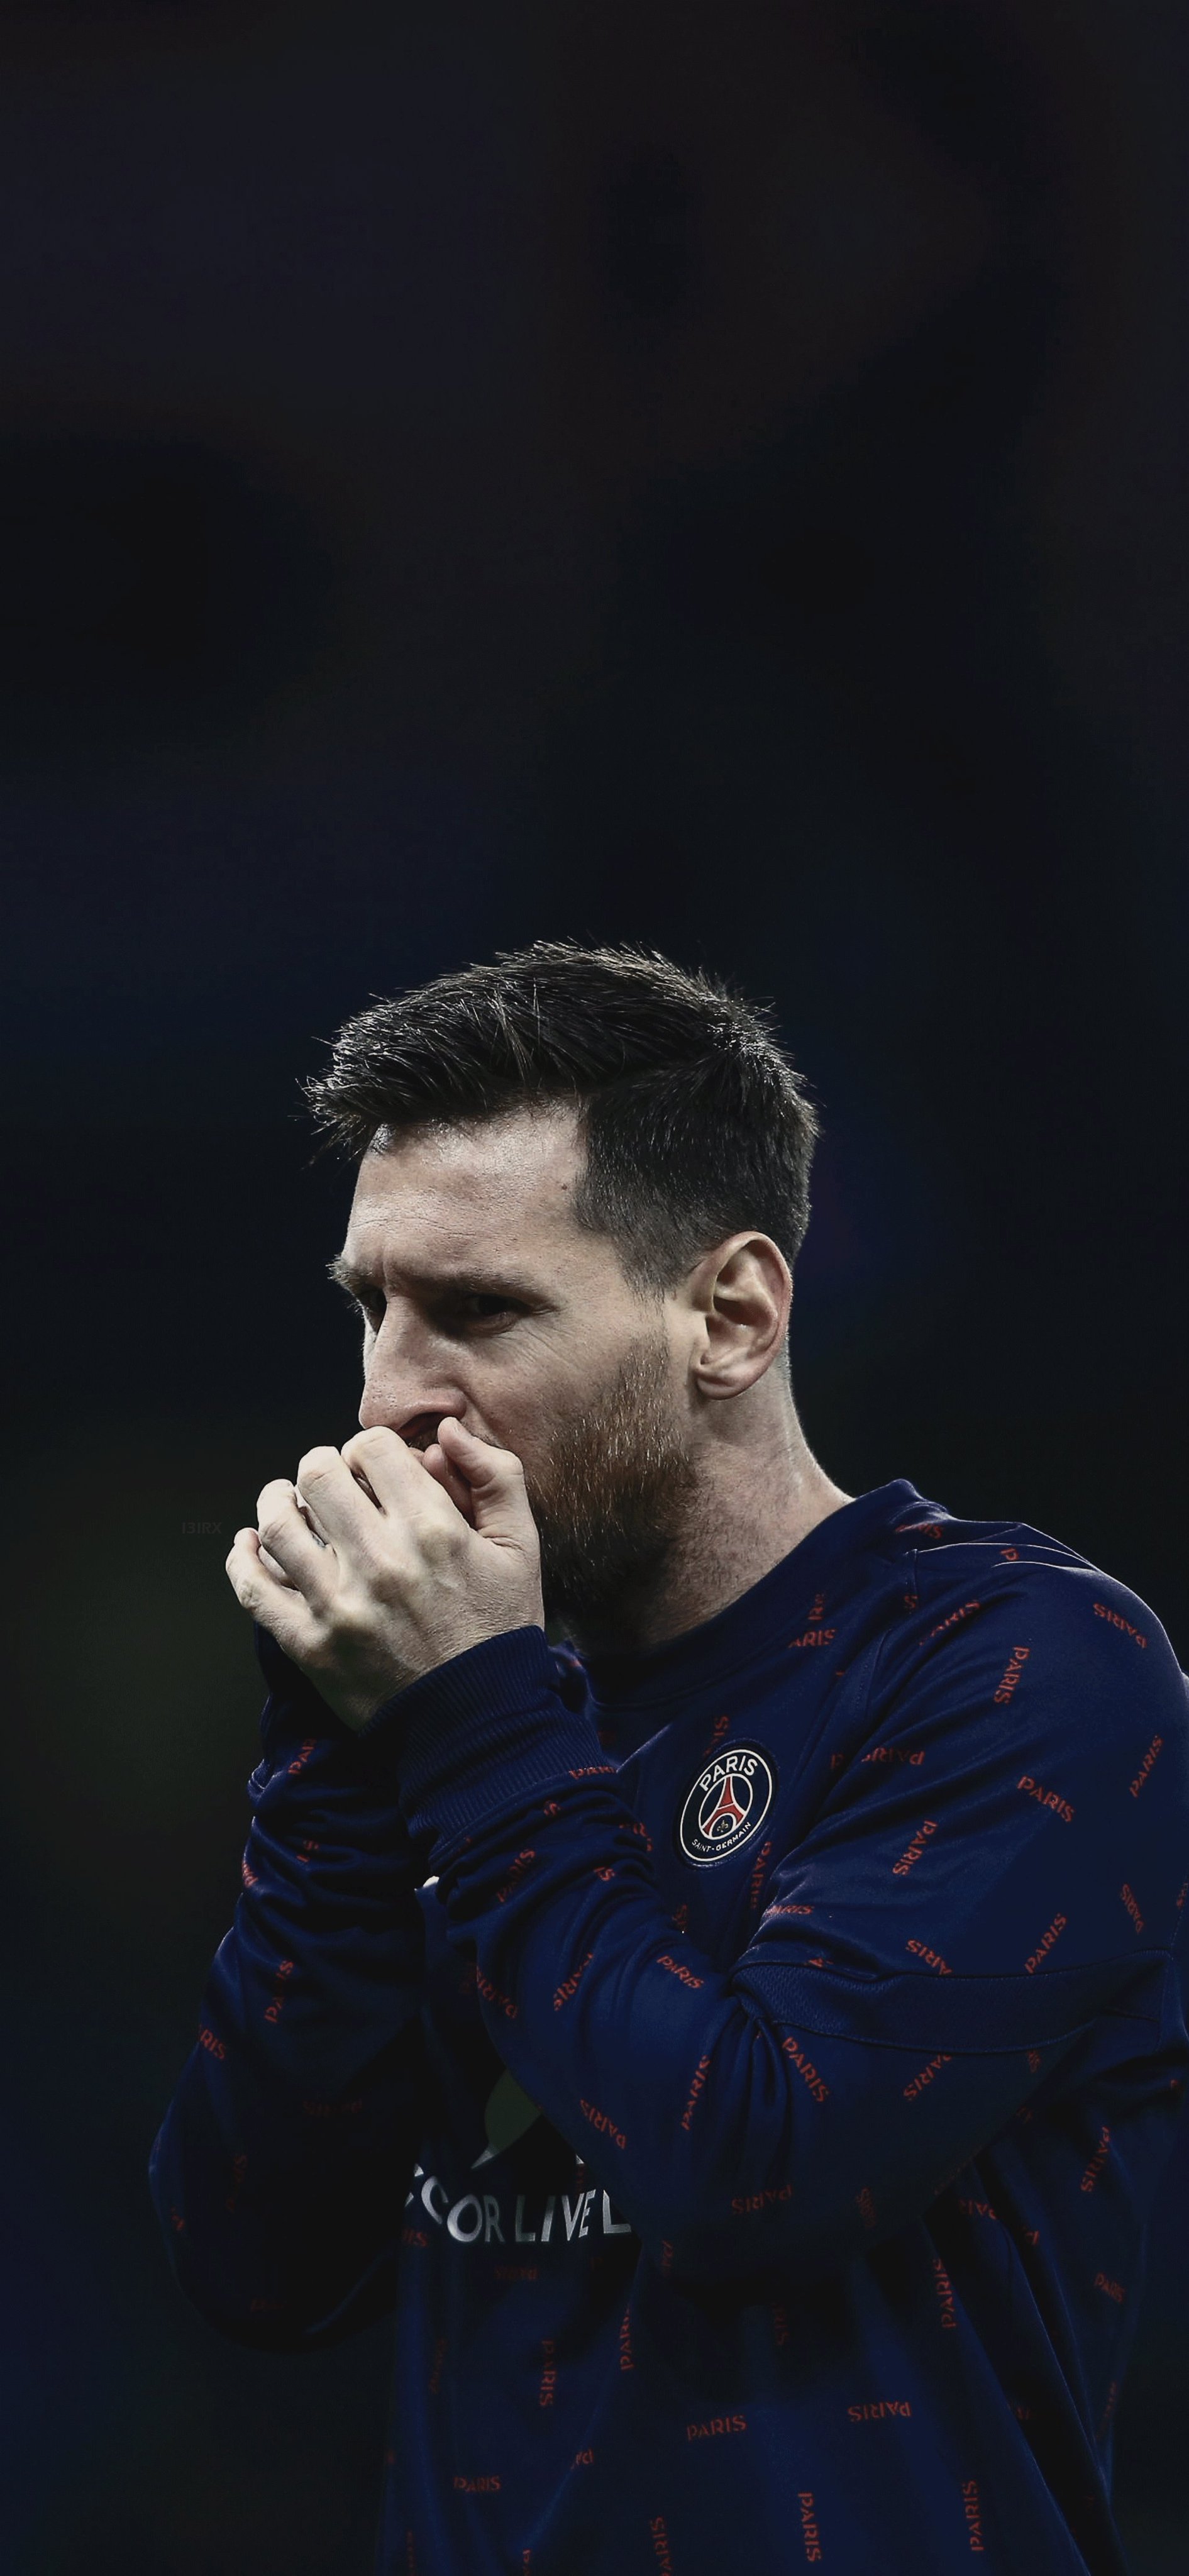 Lionel Messi: Hãy cùng xem hình ảnh của siêu sao bóng đá Lionel Messi, người đã ghi tên mình trong lịch sử thể thao thế giới. Với kỹ năng và sự nghiệp ấn tượng, Messi chắc chắn là một người lý tưởng để xem và hâm mộ.